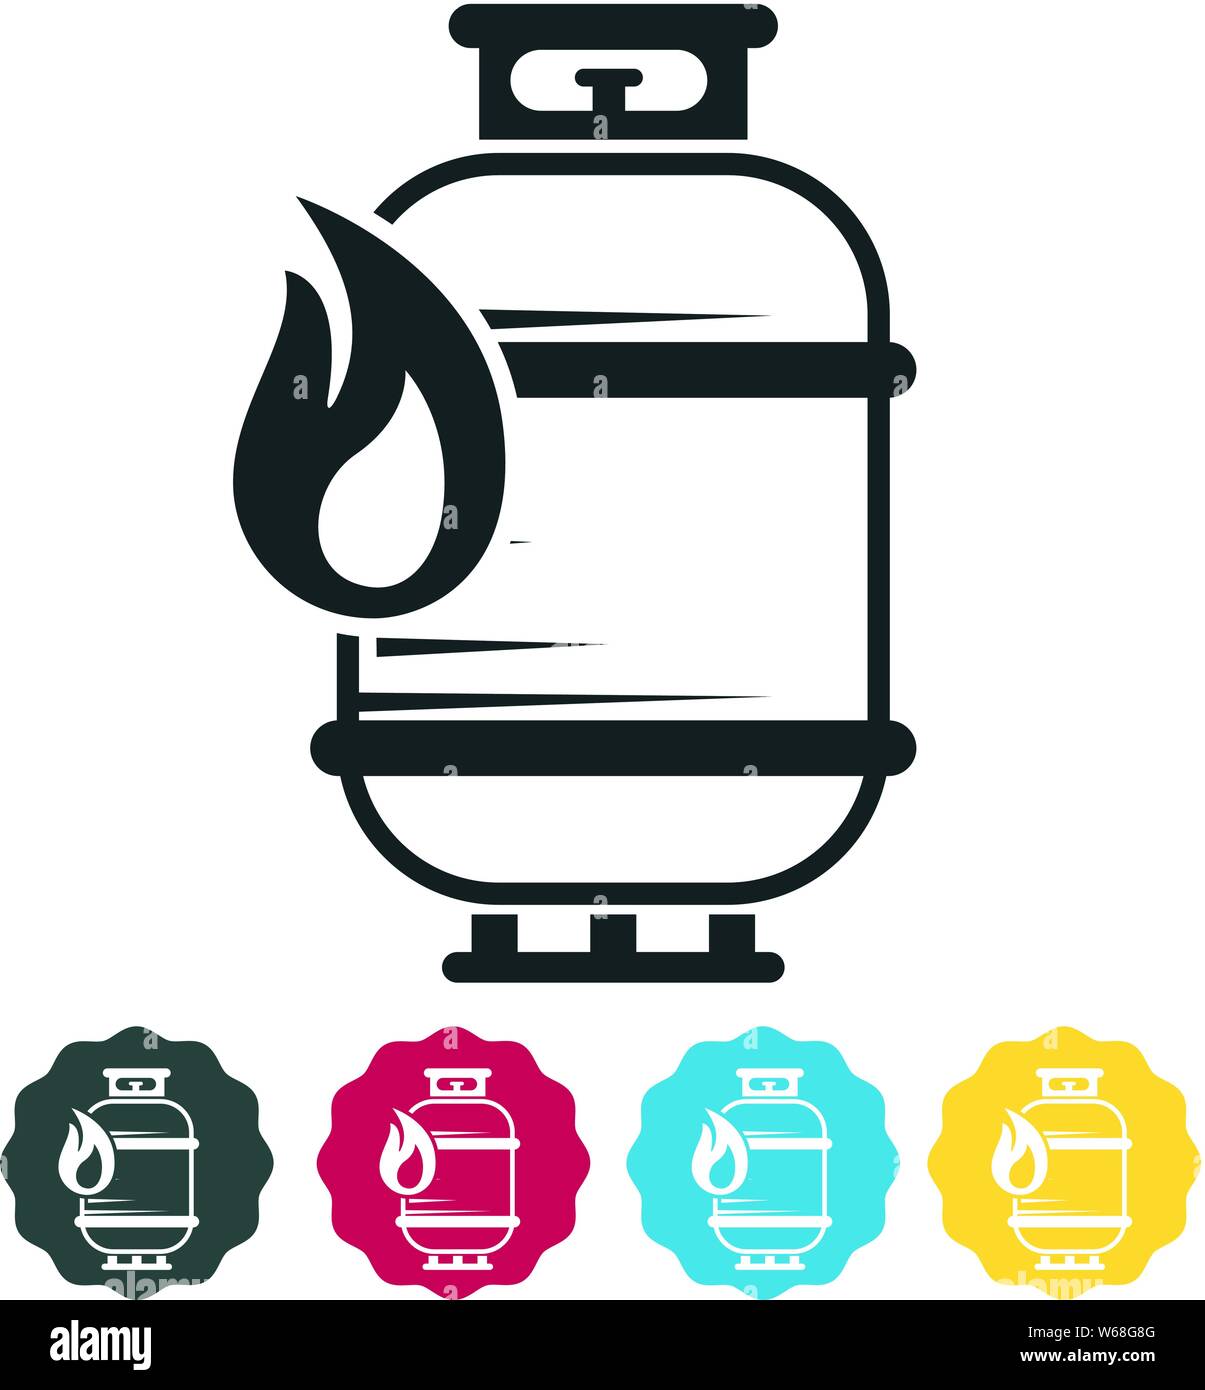 Kochen Gasflasche entflammbar Symbol als EPS 10-Datei Stock Vektor